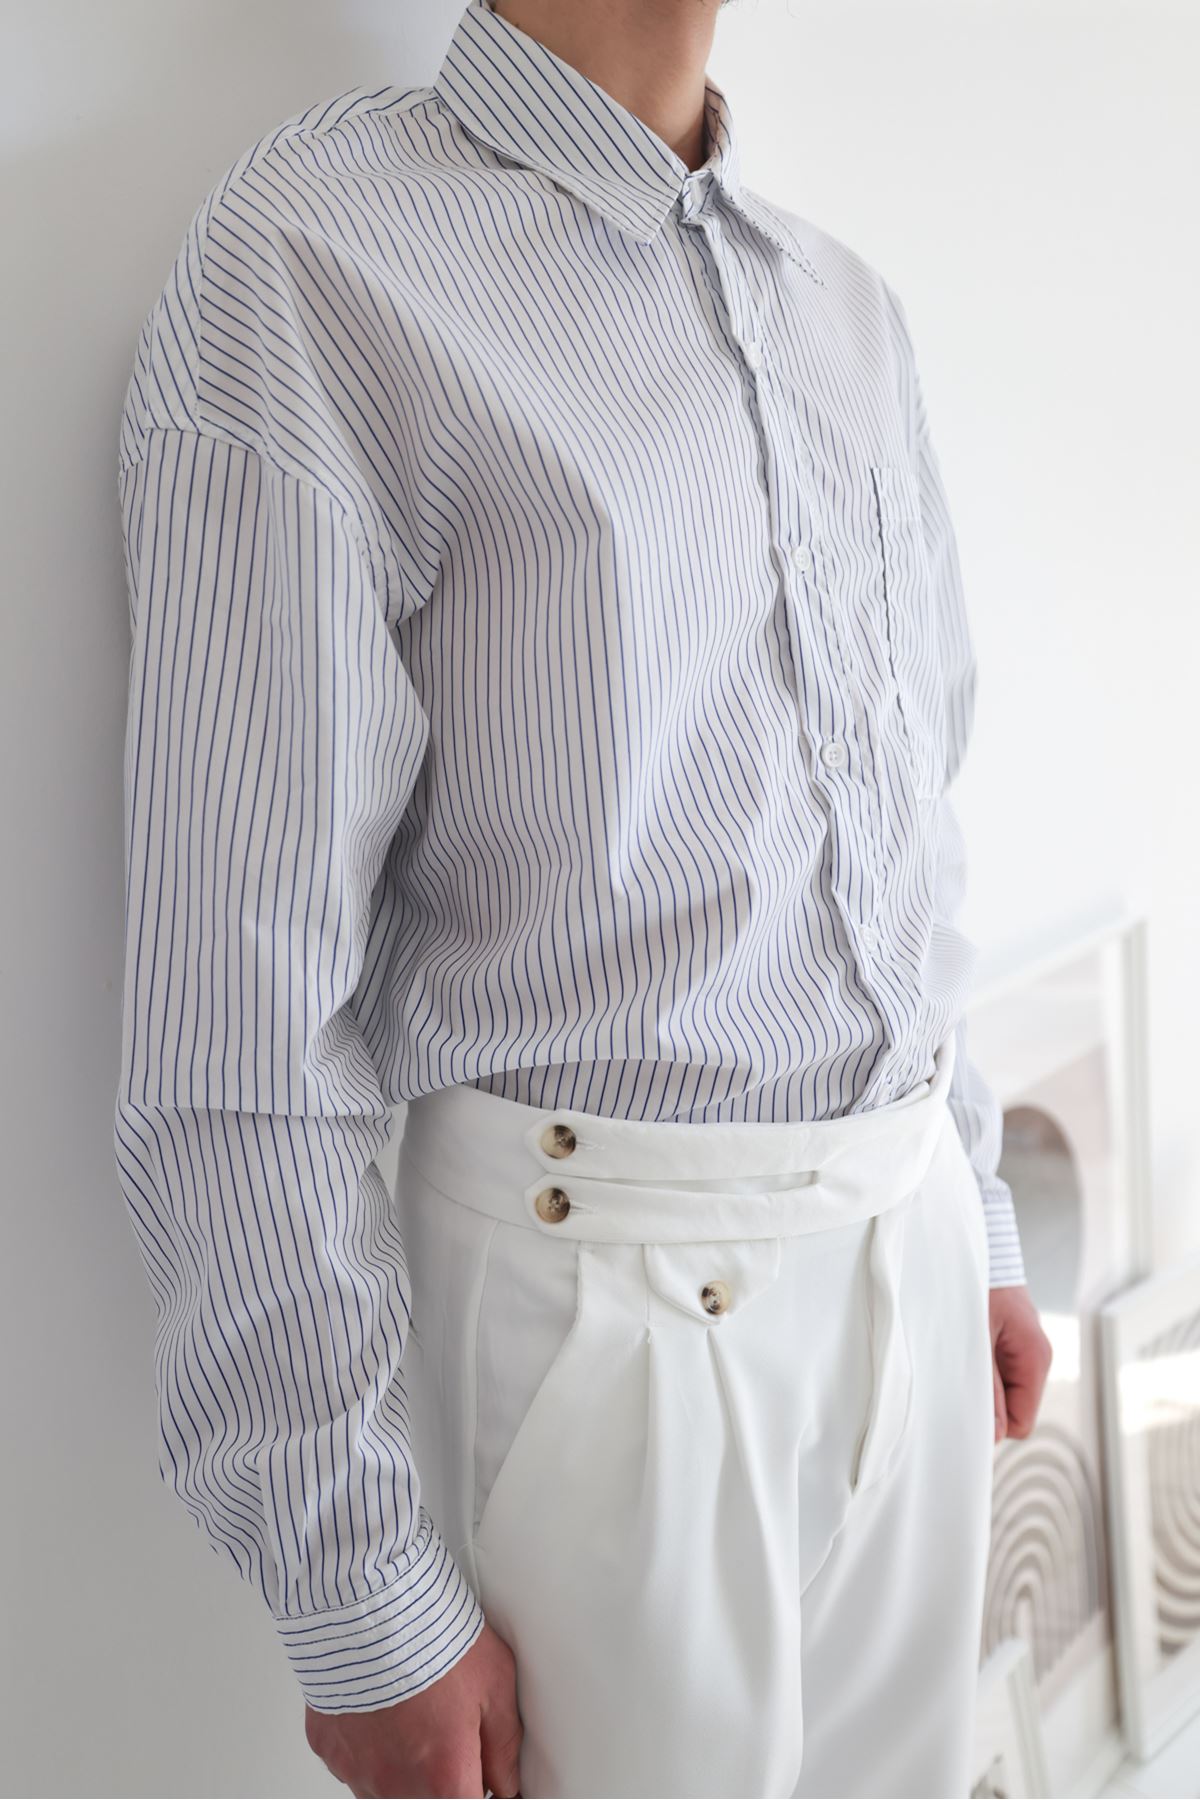 Torino Beyaz Pantolon